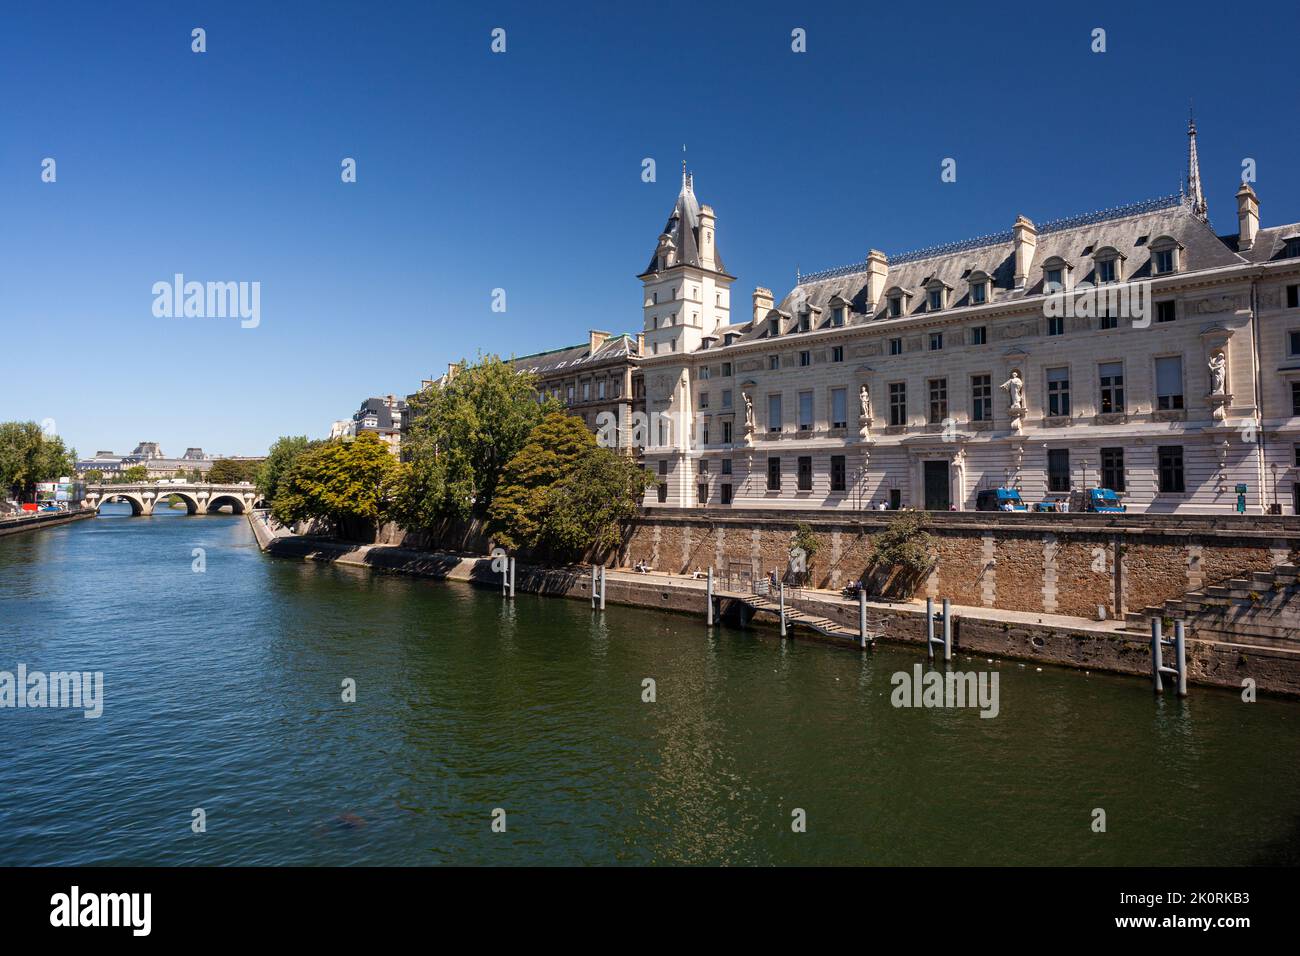 Blick auf das historische Gebäude des Strafgerichtshofs genannt Correctionnel, Strafgericht. Das Tribunal de grande Instance de Paris befindet sich im Pal Stockfoto